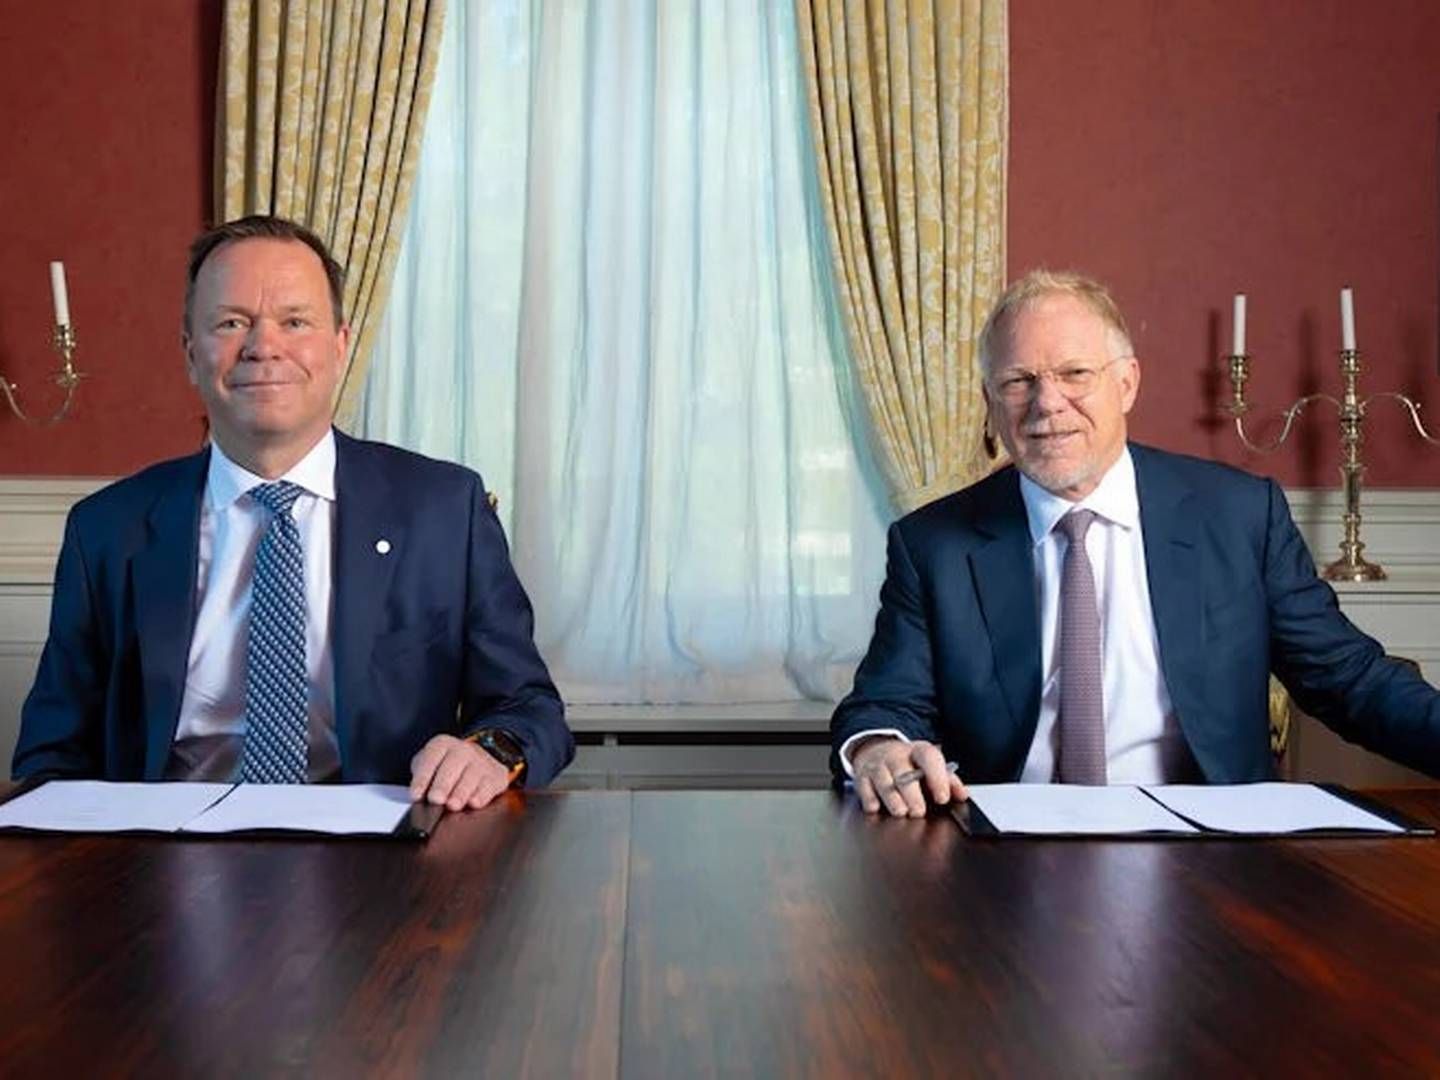 Hydro-sjef Eivind Kallevik og Mark Dooley i Macquarie undertegnet avtalen om å bli partnere i joint venture selskapet Hydro Rein. | Foto: Herman Kristoffer Skjølsvik, Hydro